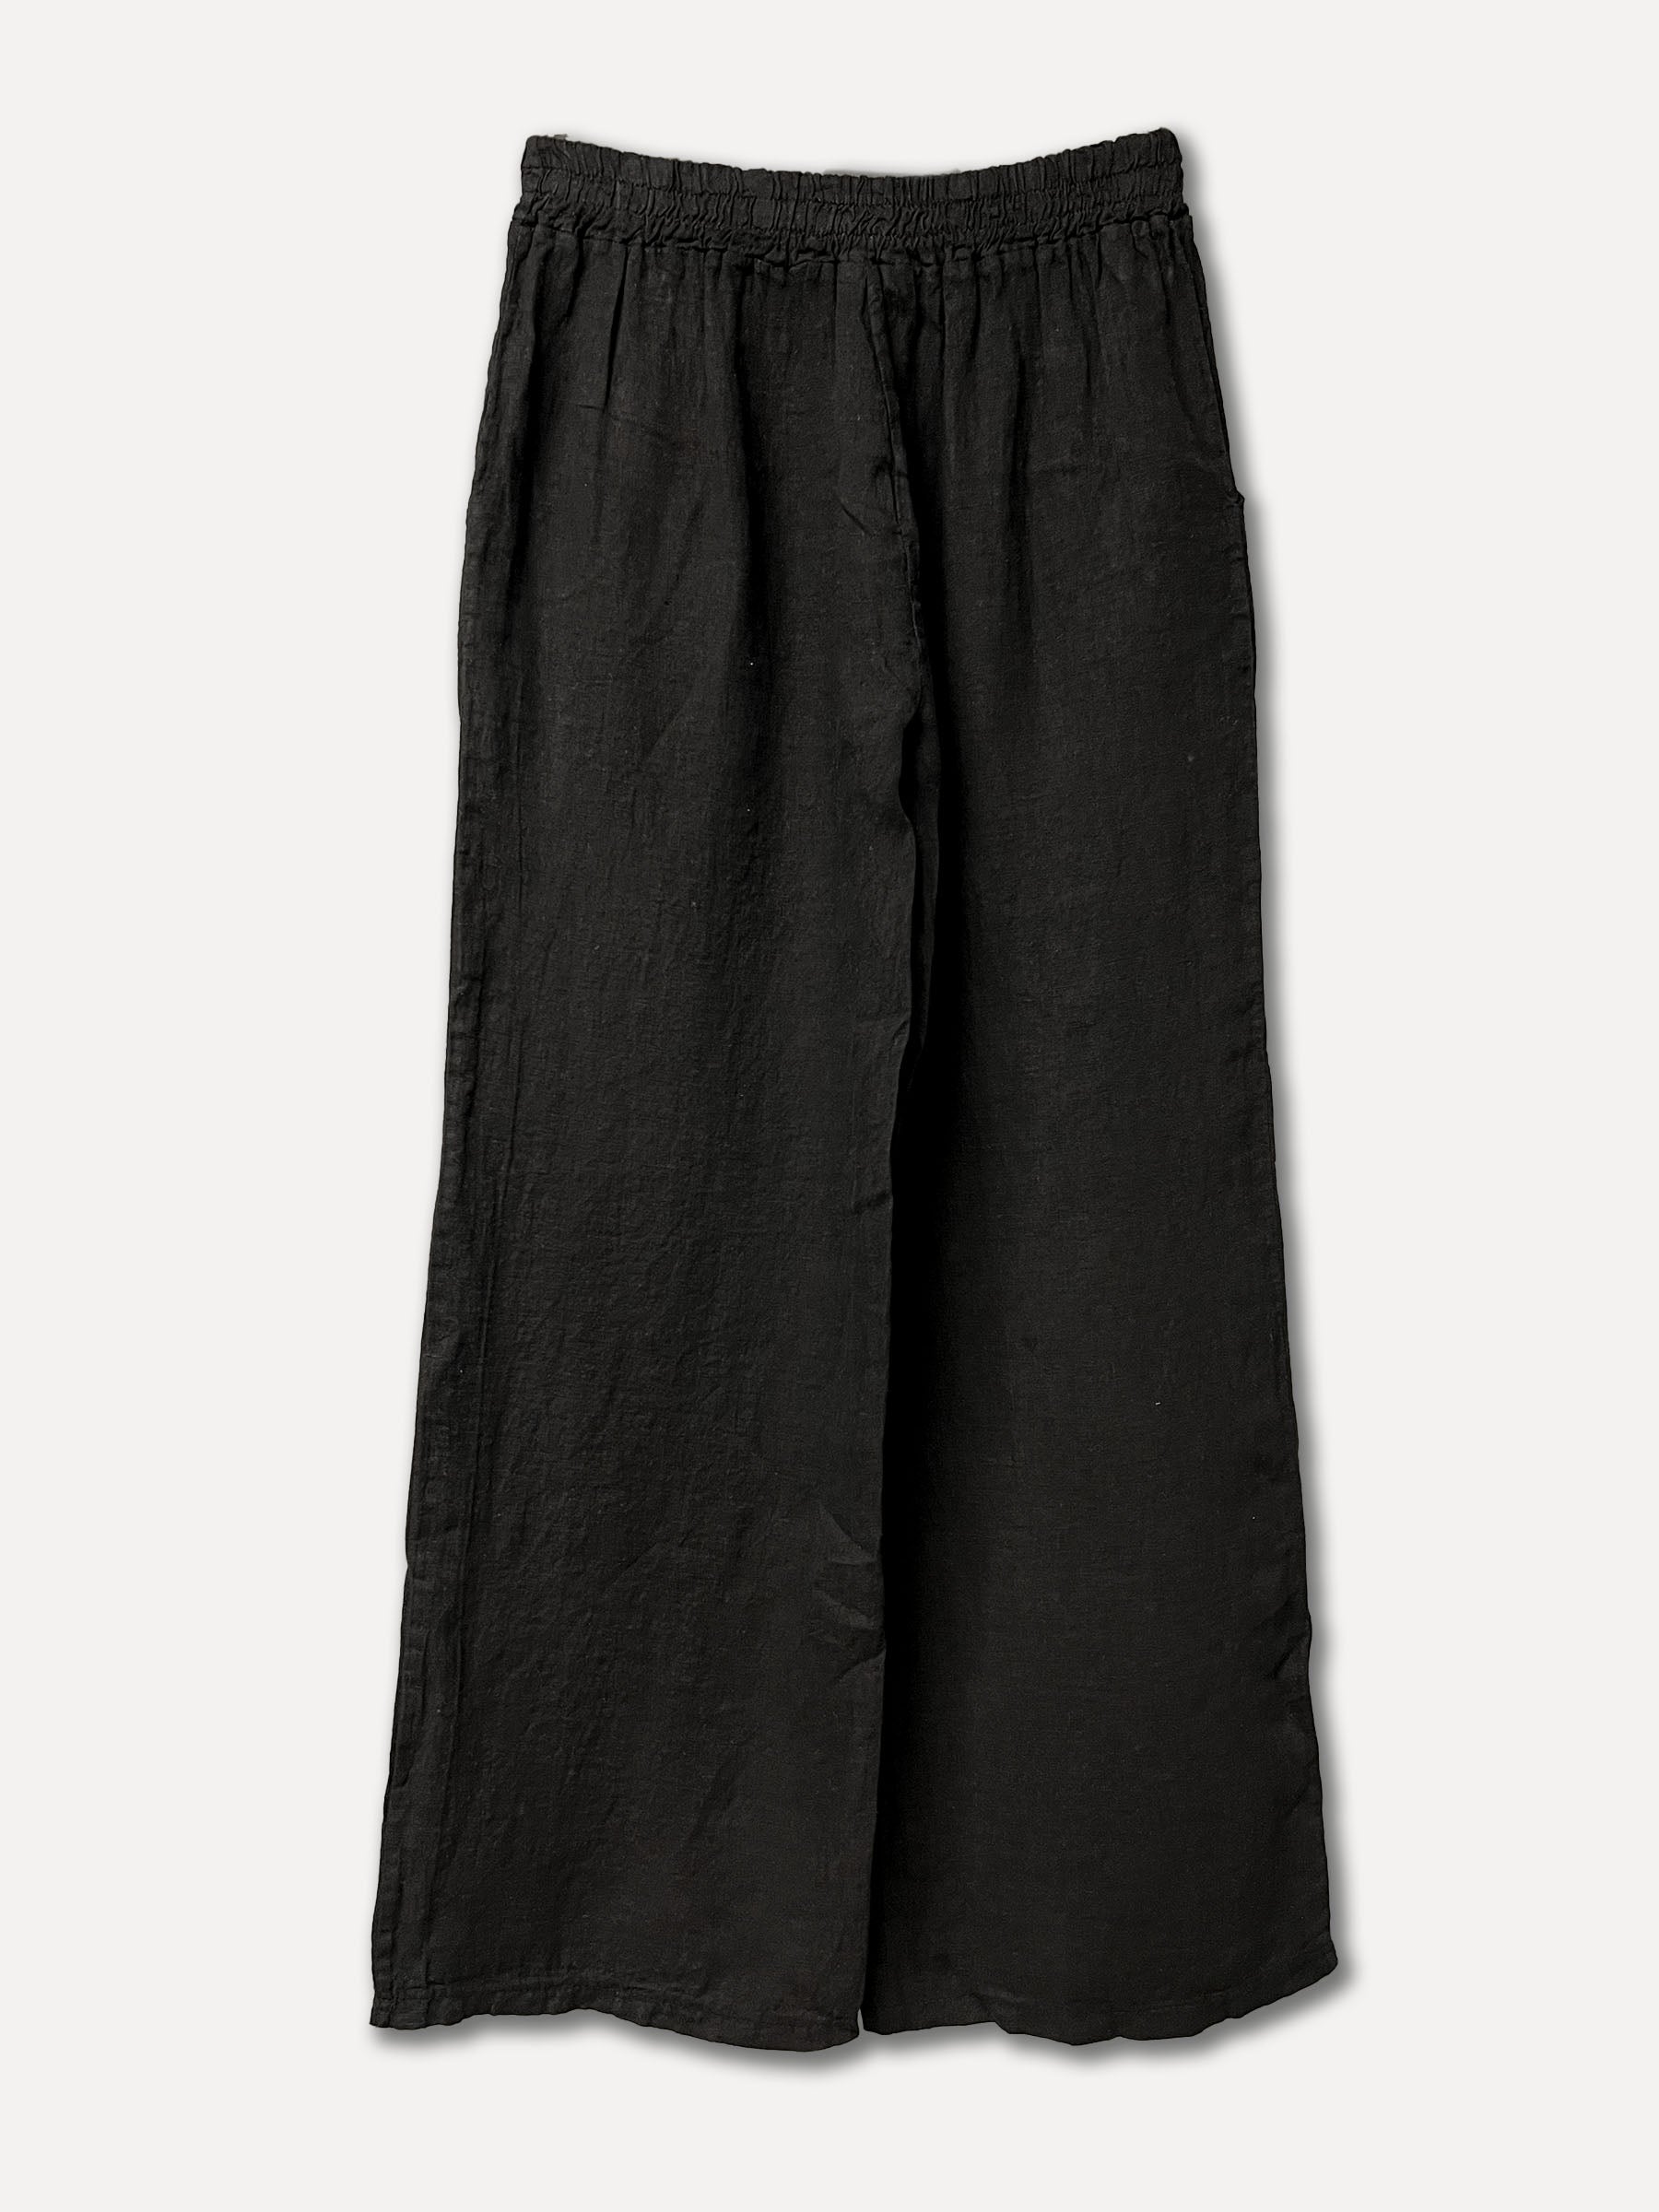 Lerici Linen Pants, Black